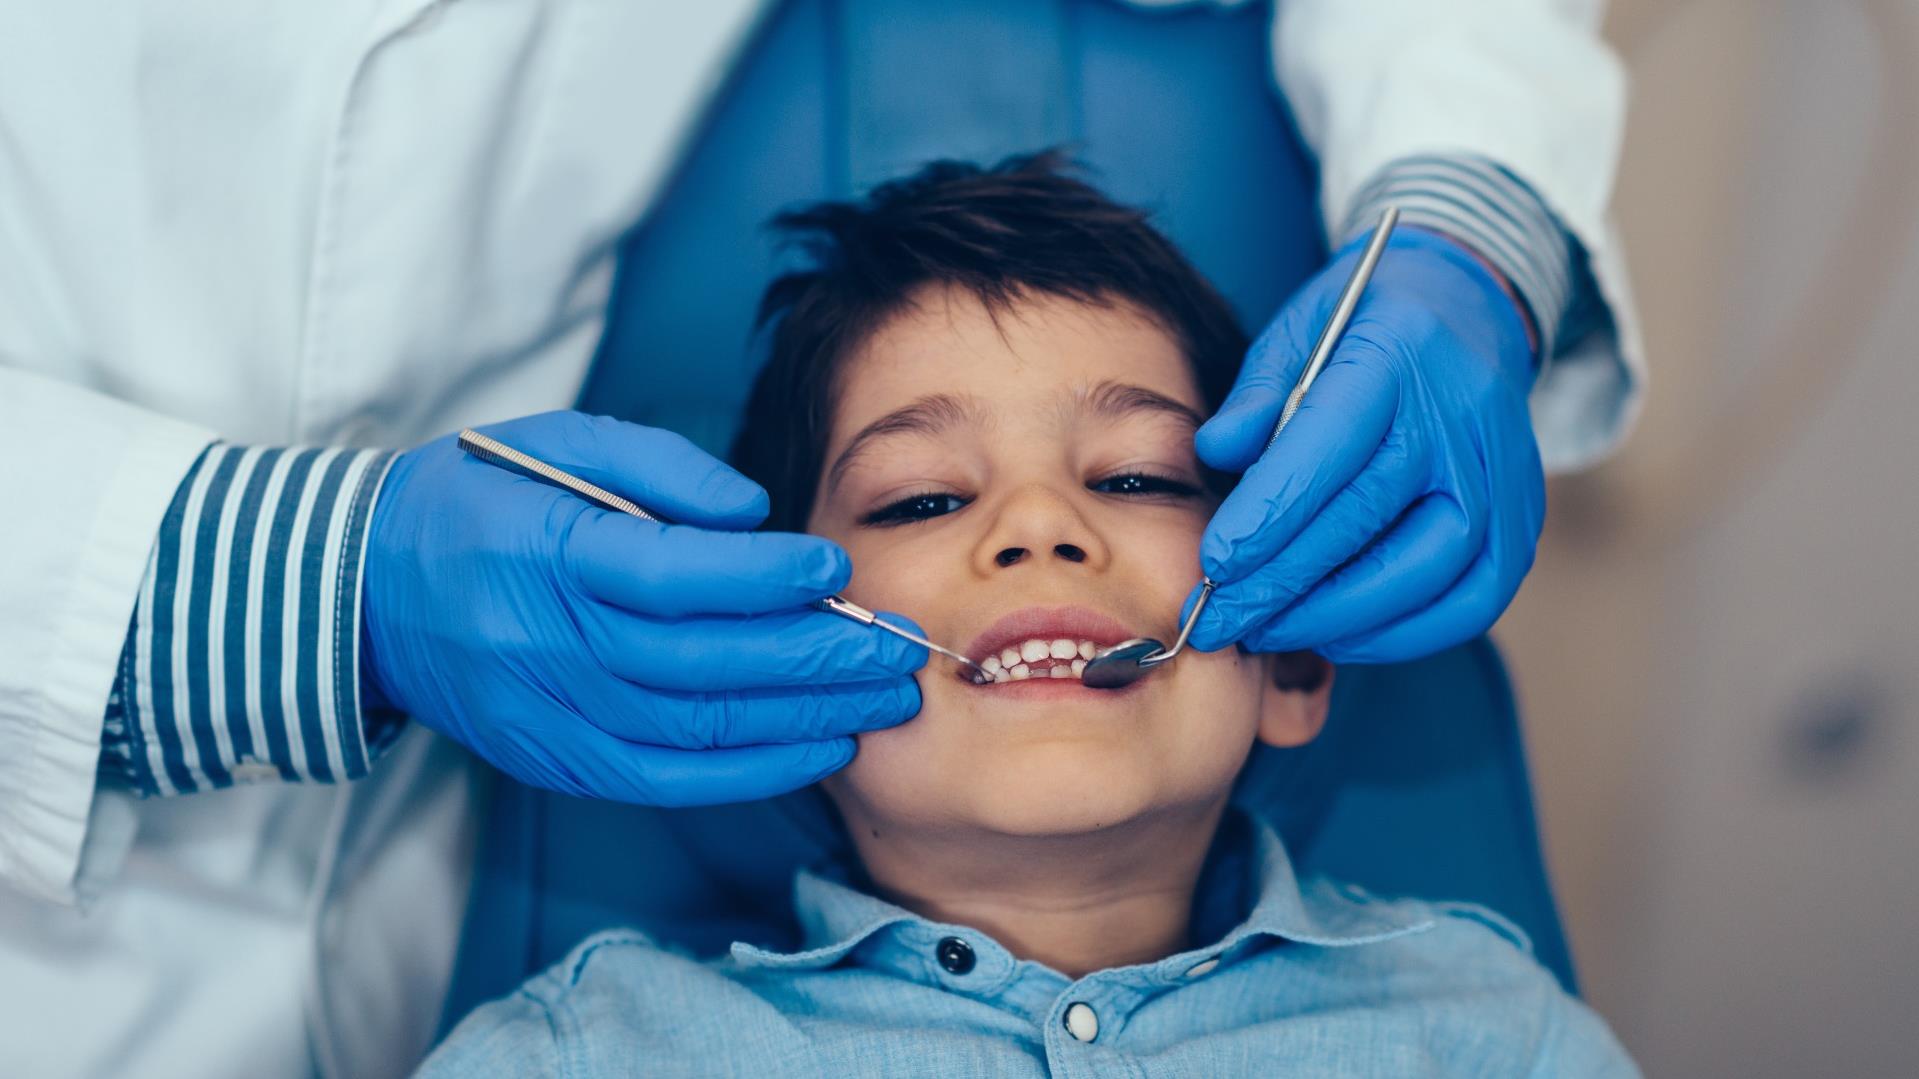 【醫療】大洛杉磯地區專為兒童設計的兒童牙科專科 | 牛錫麟牛世豪兒童牙醫師